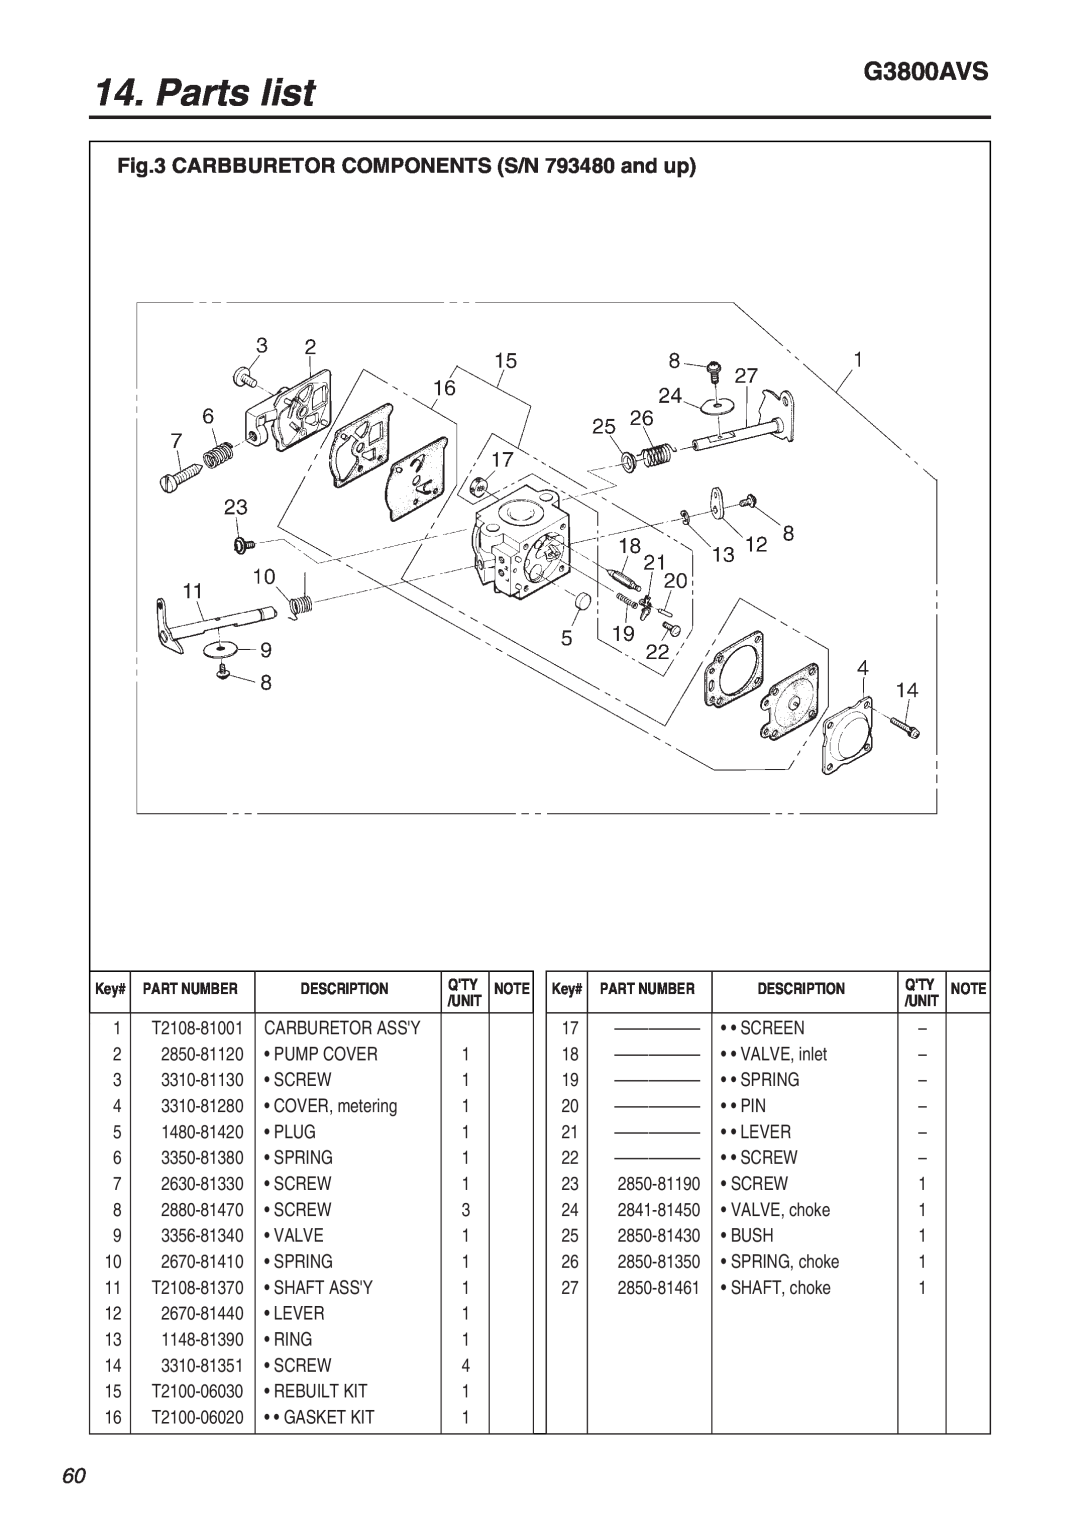 Zenoah G3800AVS manual Parts list, CARBBURETOR COMPONENTS S/N 793480 and up 